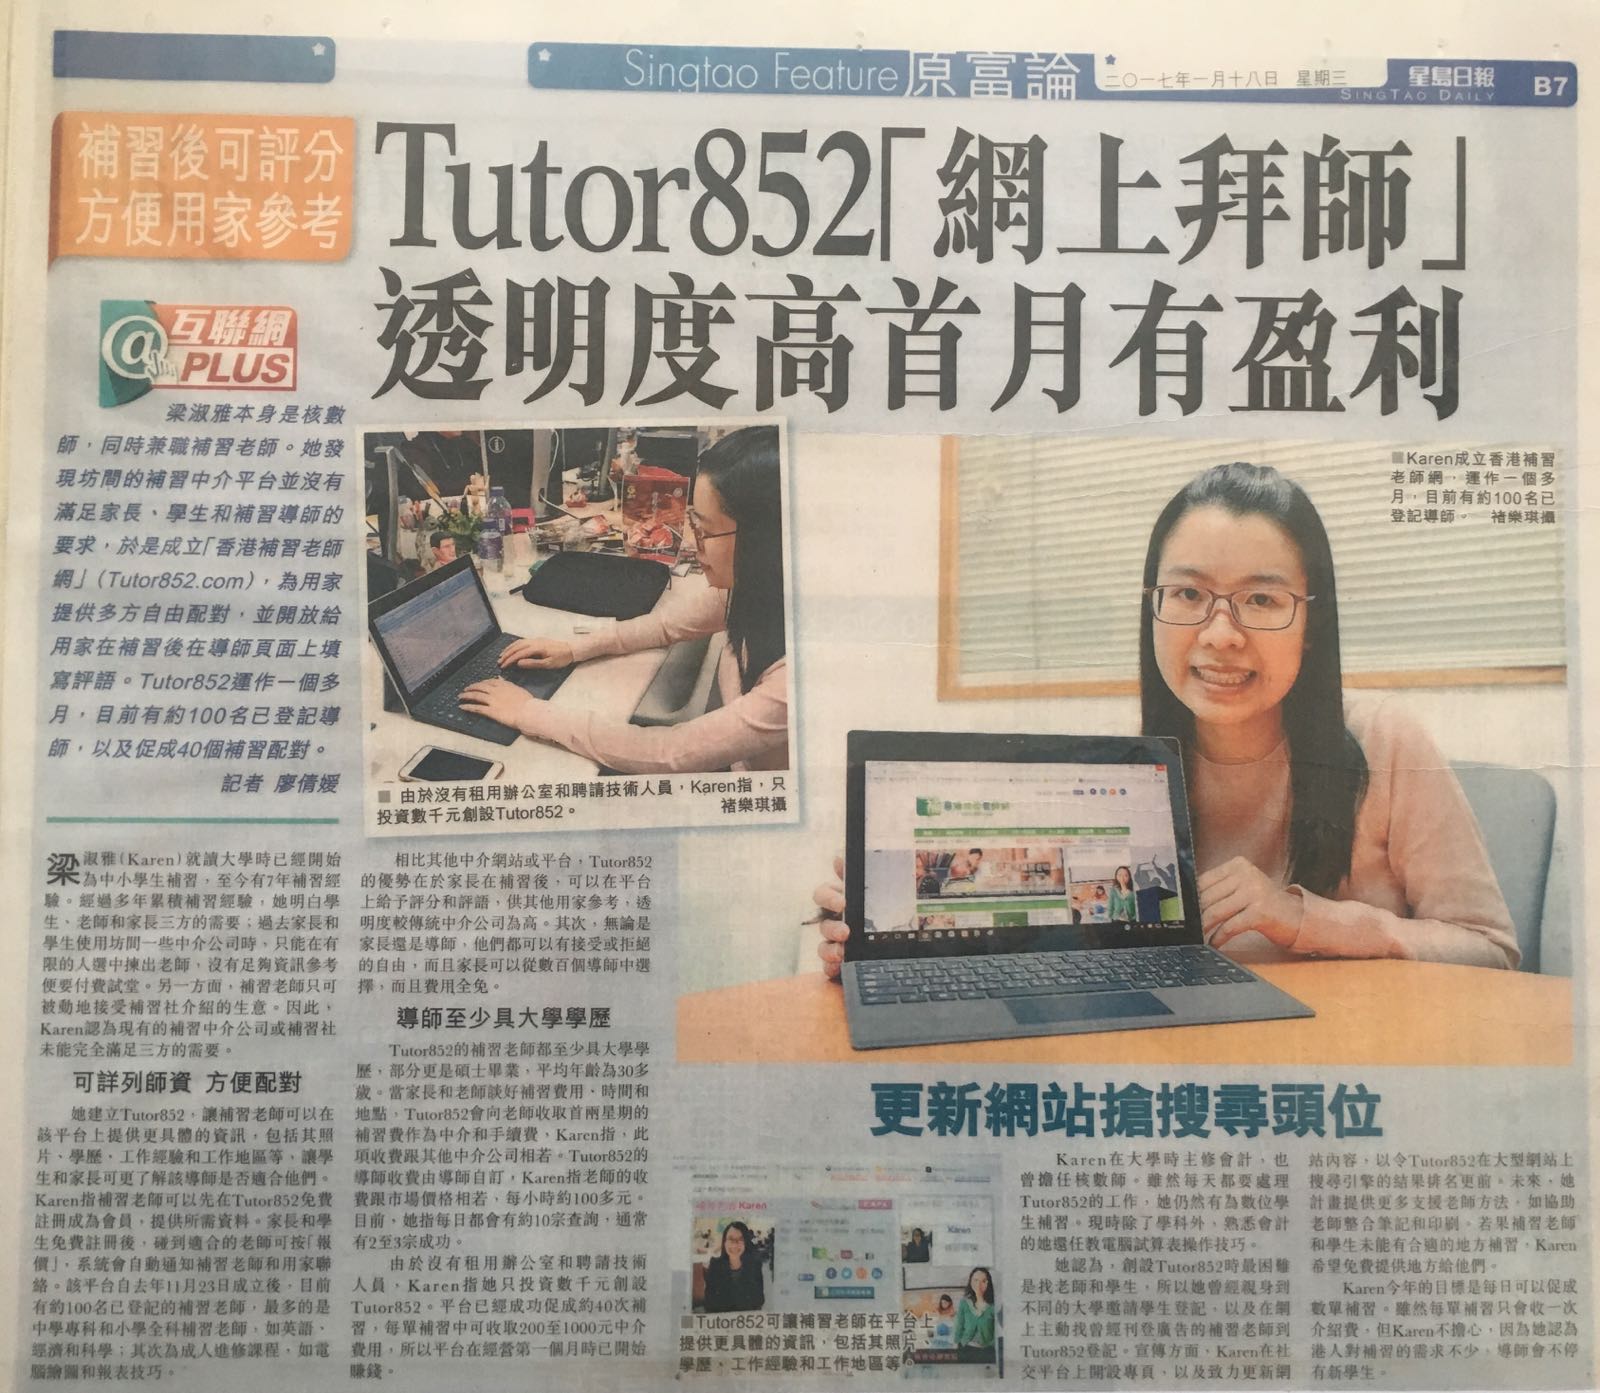 補習老師焦點/新聞/消息/情報: Tutor852「網上拜師」 透明度高首月有盈利